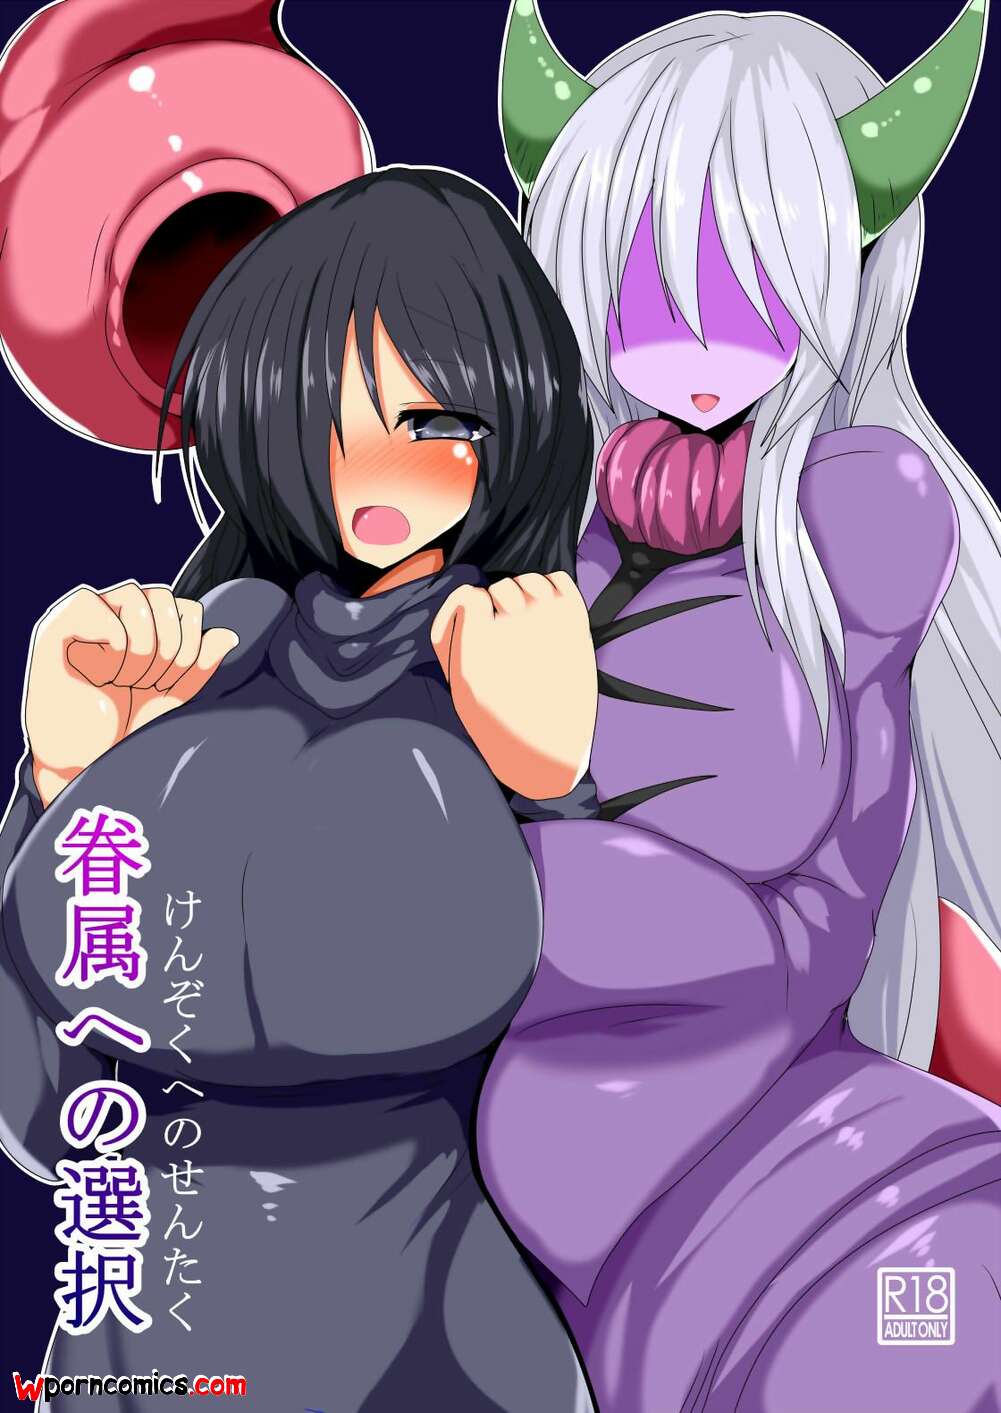 1001px x 1413px - âœ…ï¸ Porn comic Kenzoku e no Sentaku. Gensou Stomach Sex comic beauty decided  to | Porn comics in English for adults only | sexkomix2.com